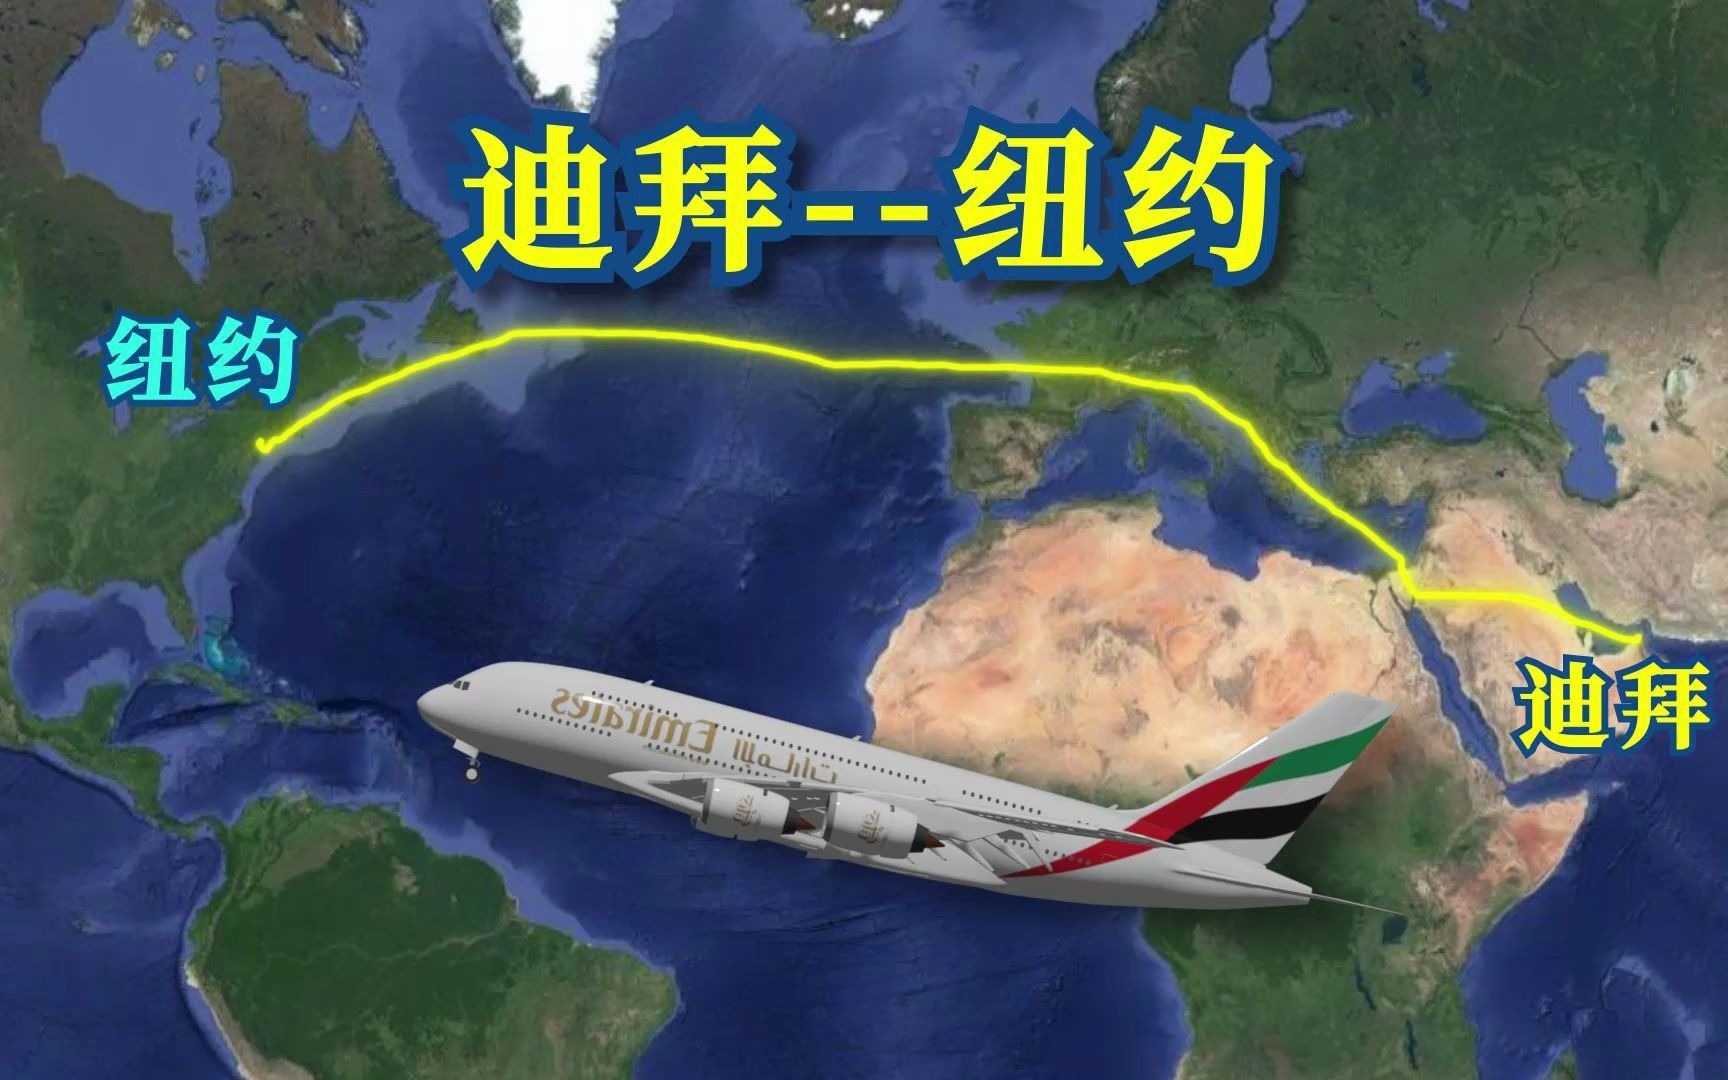 模拟a380从迪拜直飞纽约,途径地中海,欧洲横跨大西洋,全程11200公里!